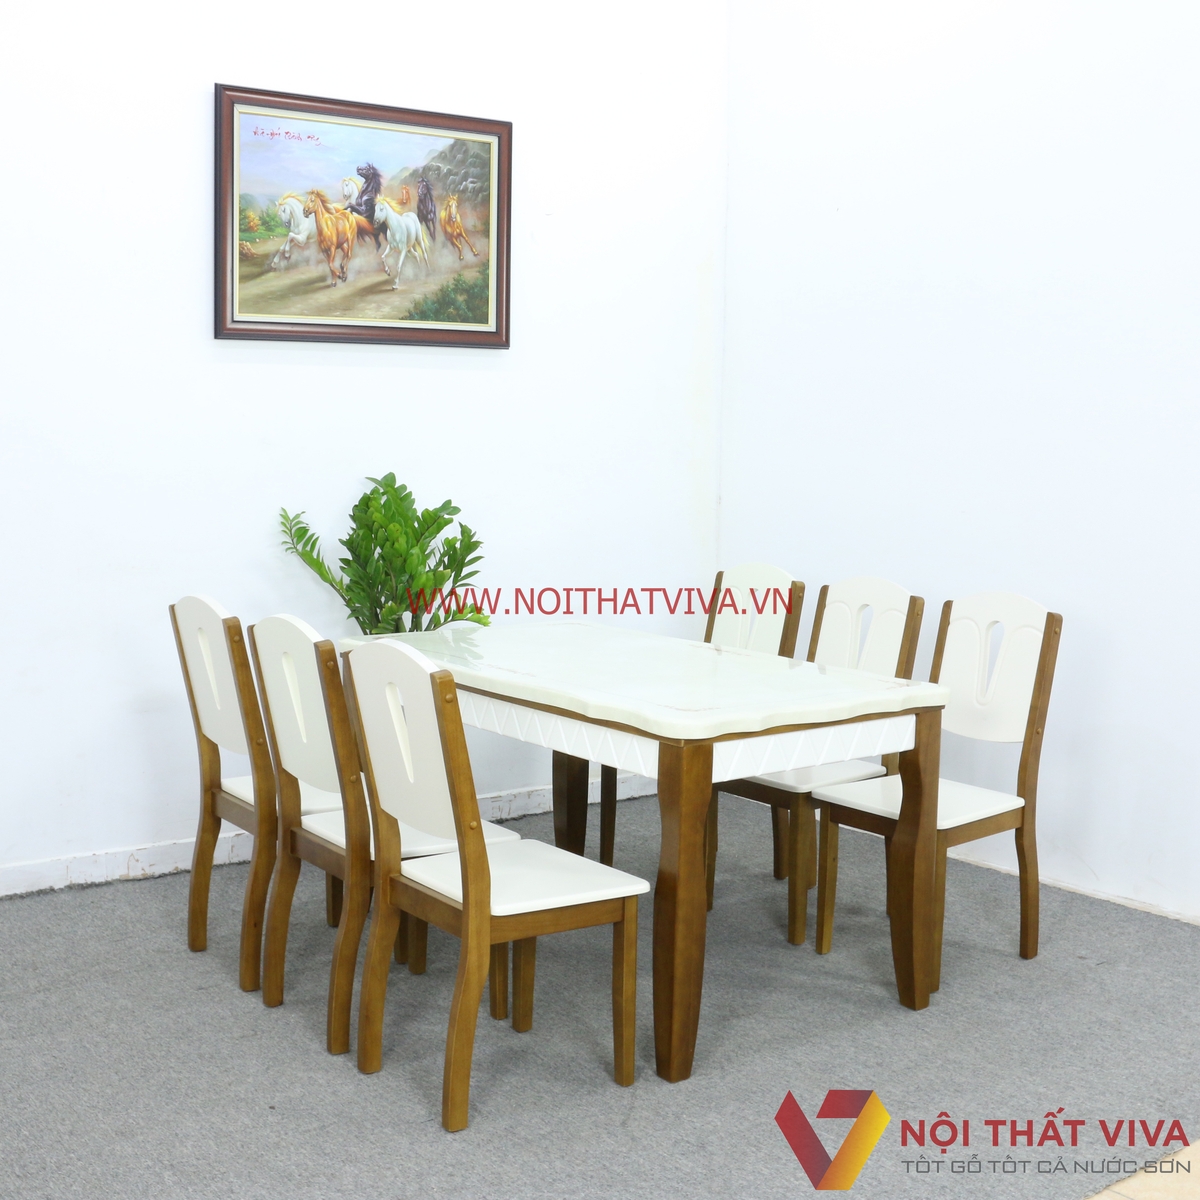 Những bộ bàn ăn gỗ xoan chất lượng, bền đẹp đáng mua nhất hiện nay